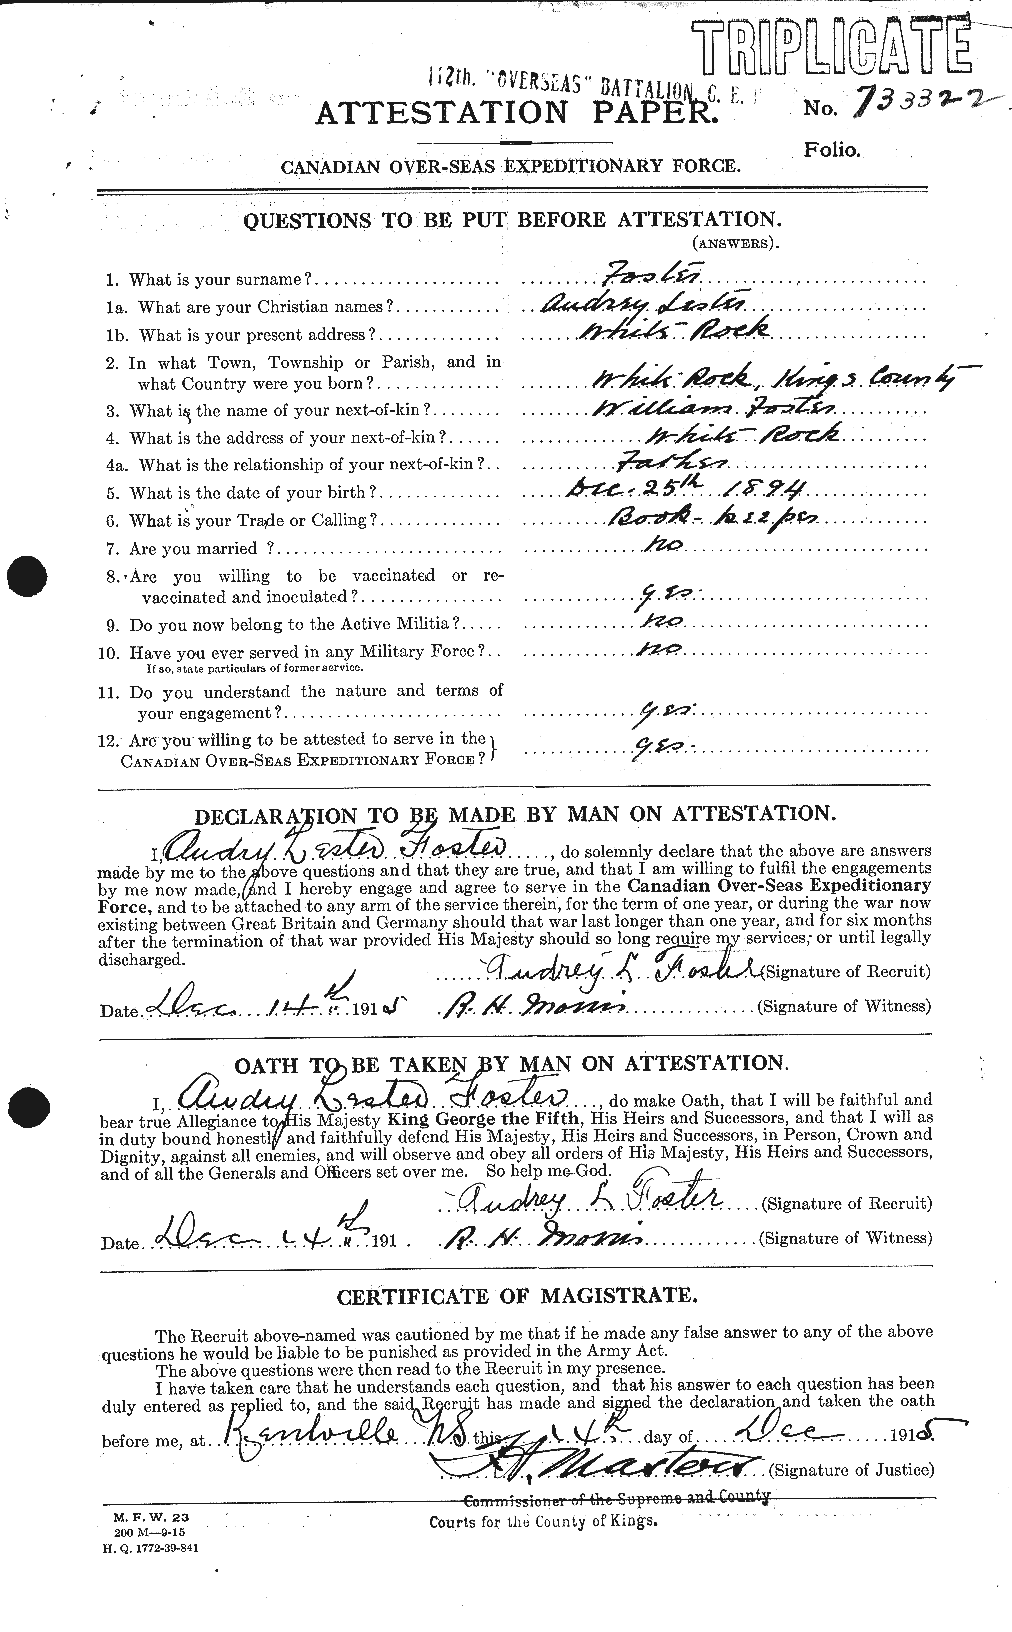 Dossiers du Personnel de la Première Guerre mondiale - CEC 330481a